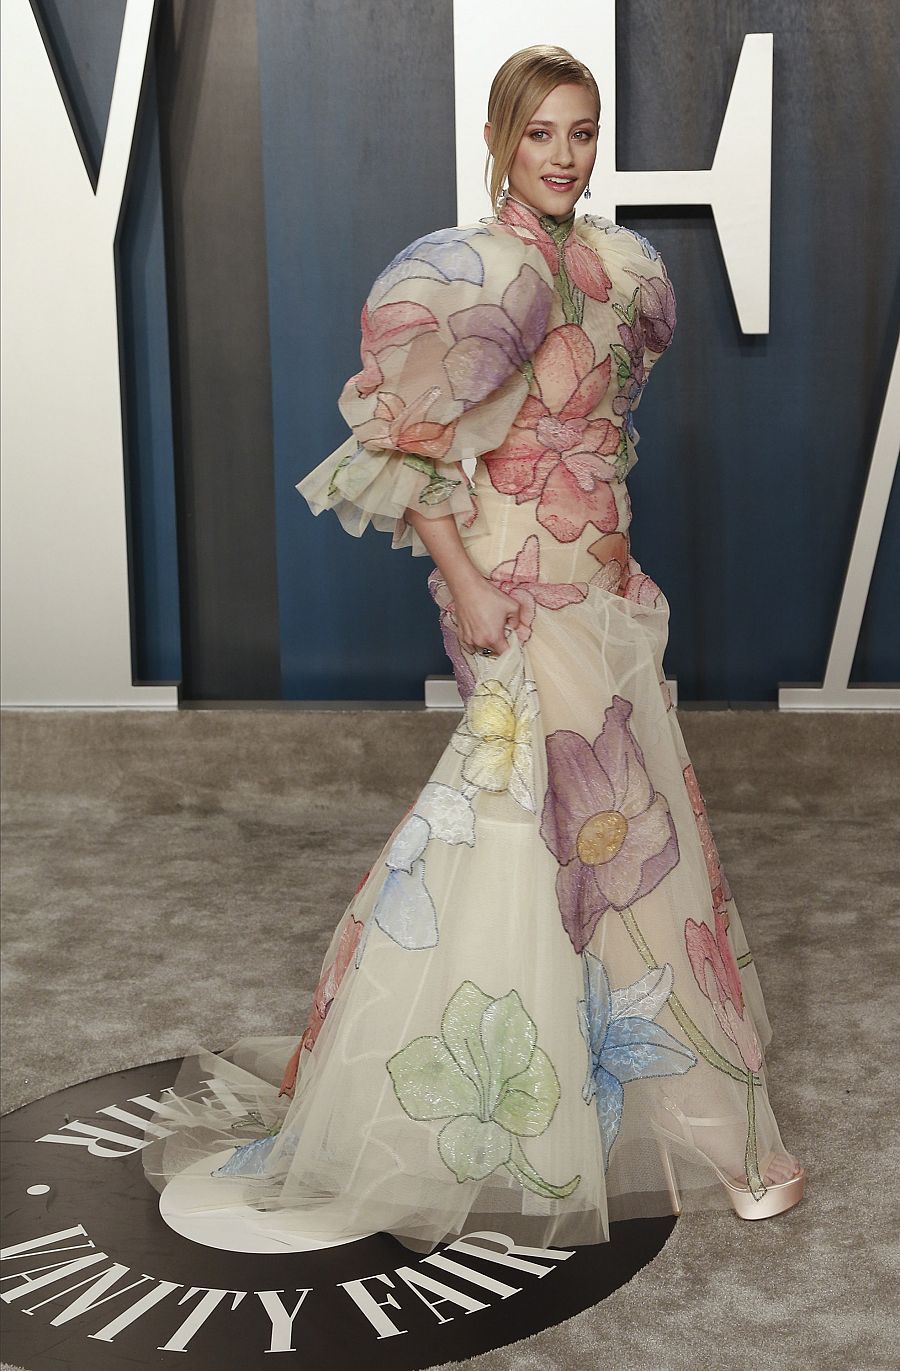 La actriz Lili Reinhart, con un espectacular vestido de flores, en la fiesta de los Oscar